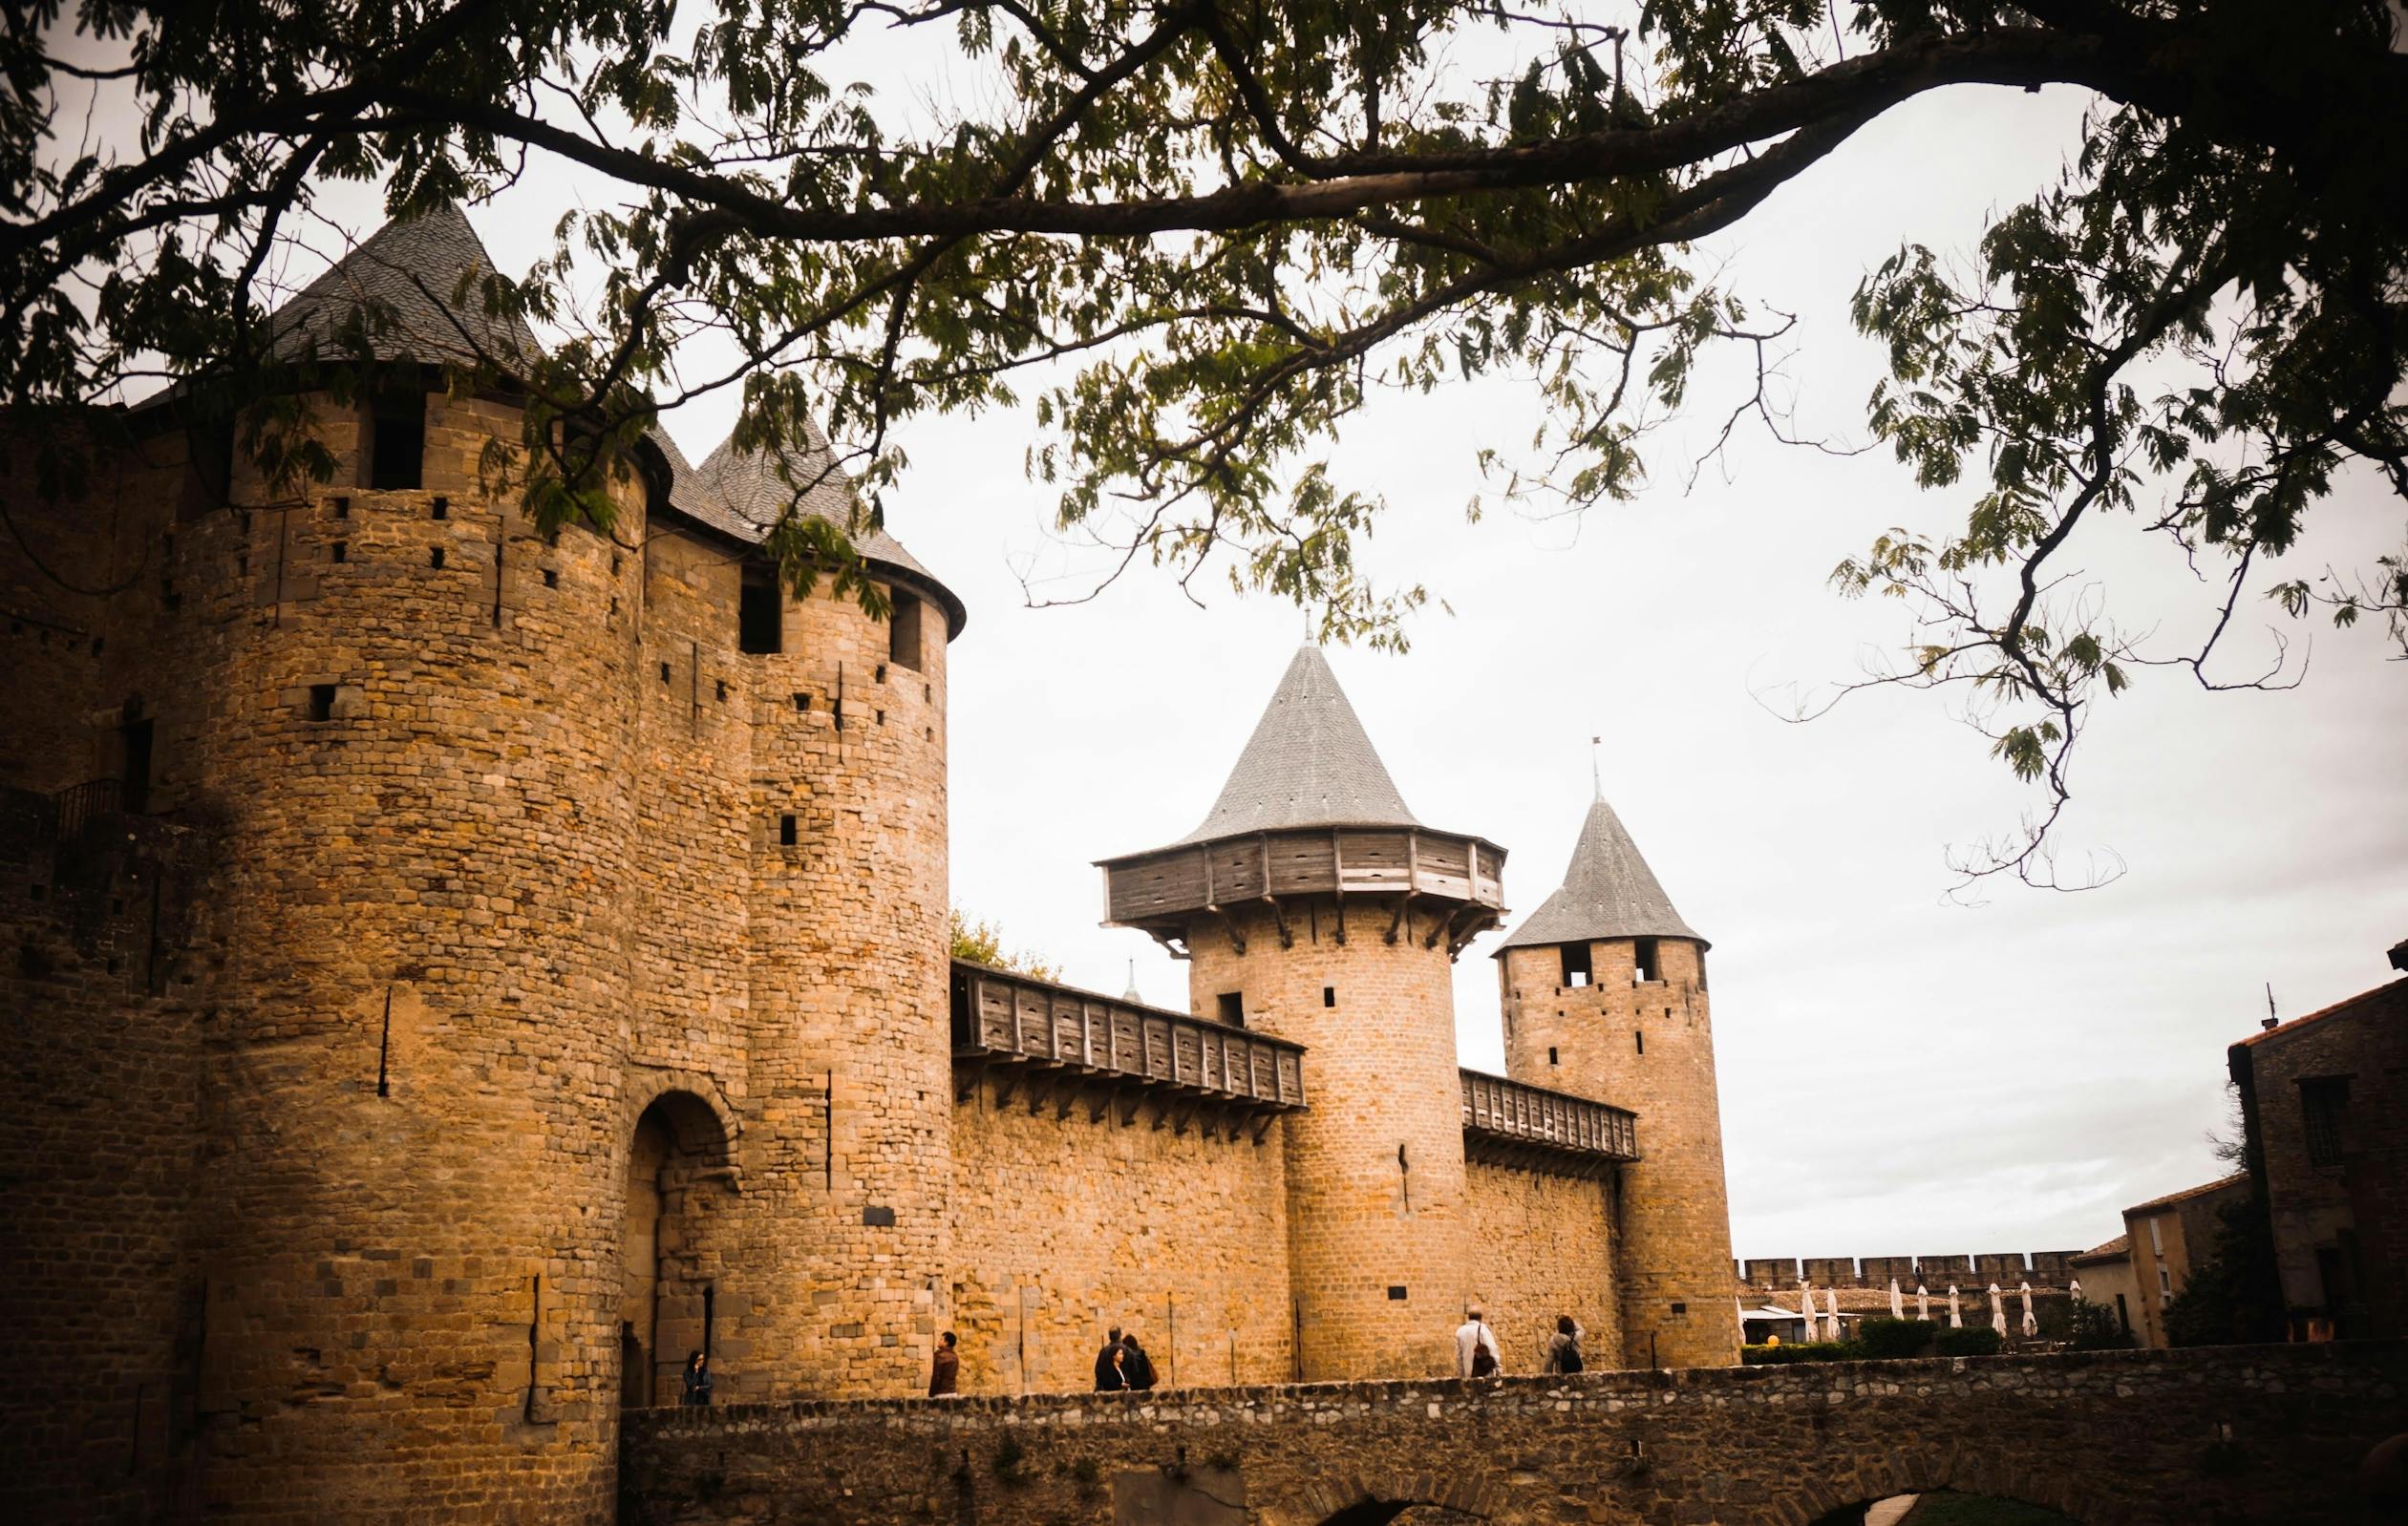 Ah Carcassonne, ses remparts et son chateau!